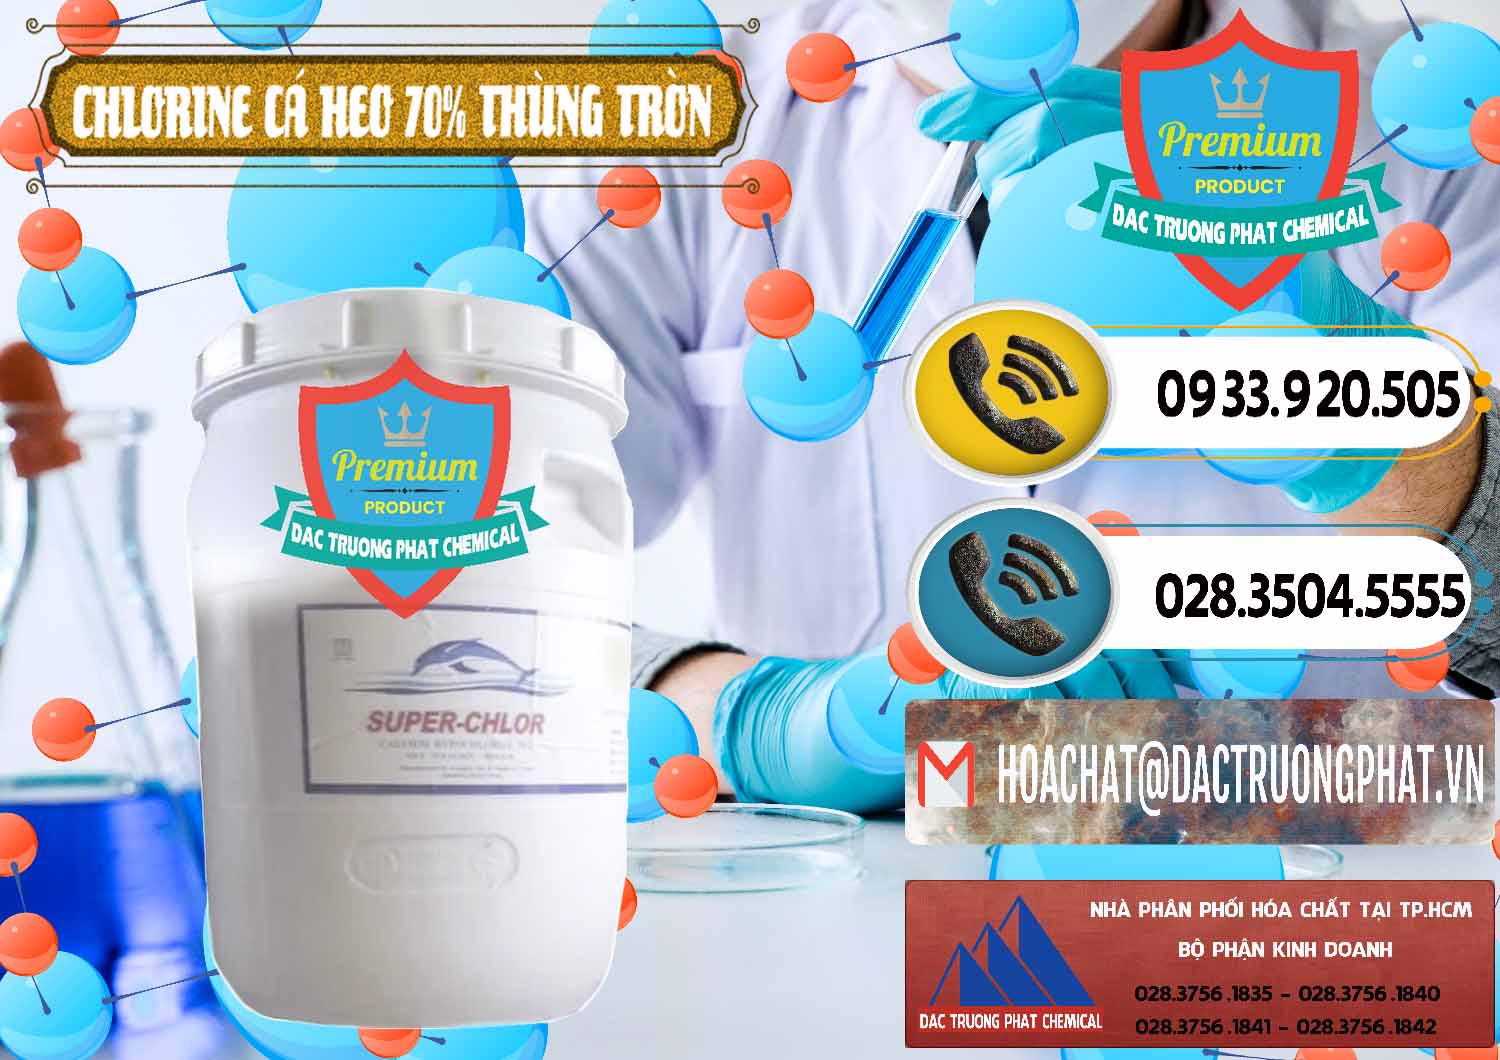 Cty bán & cung cấp Clorin - Chlorine Cá Heo 70% Super Chlor Thùng Tròn Nắp Trắng Trung Quốc China - 0239 - Công ty cung cấp - nhập khẩu hóa chất tại TP.HCM - hoachatdetnhuom.vn